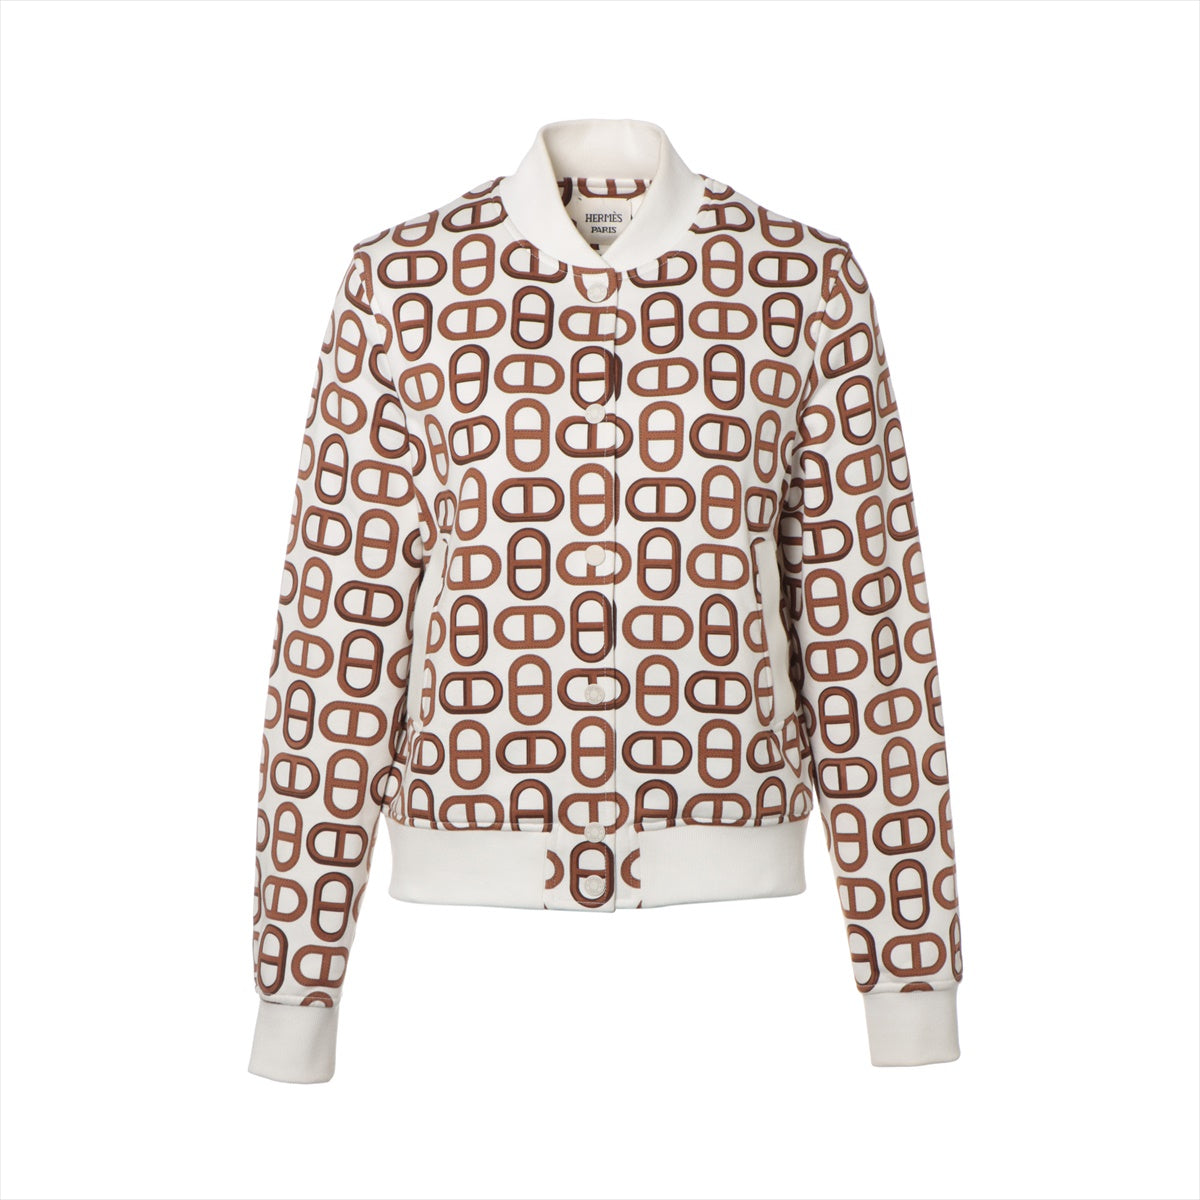 Hermès Chaîne d'Ancre 24 years Cotton Jacket 36 Ladies' White x brown